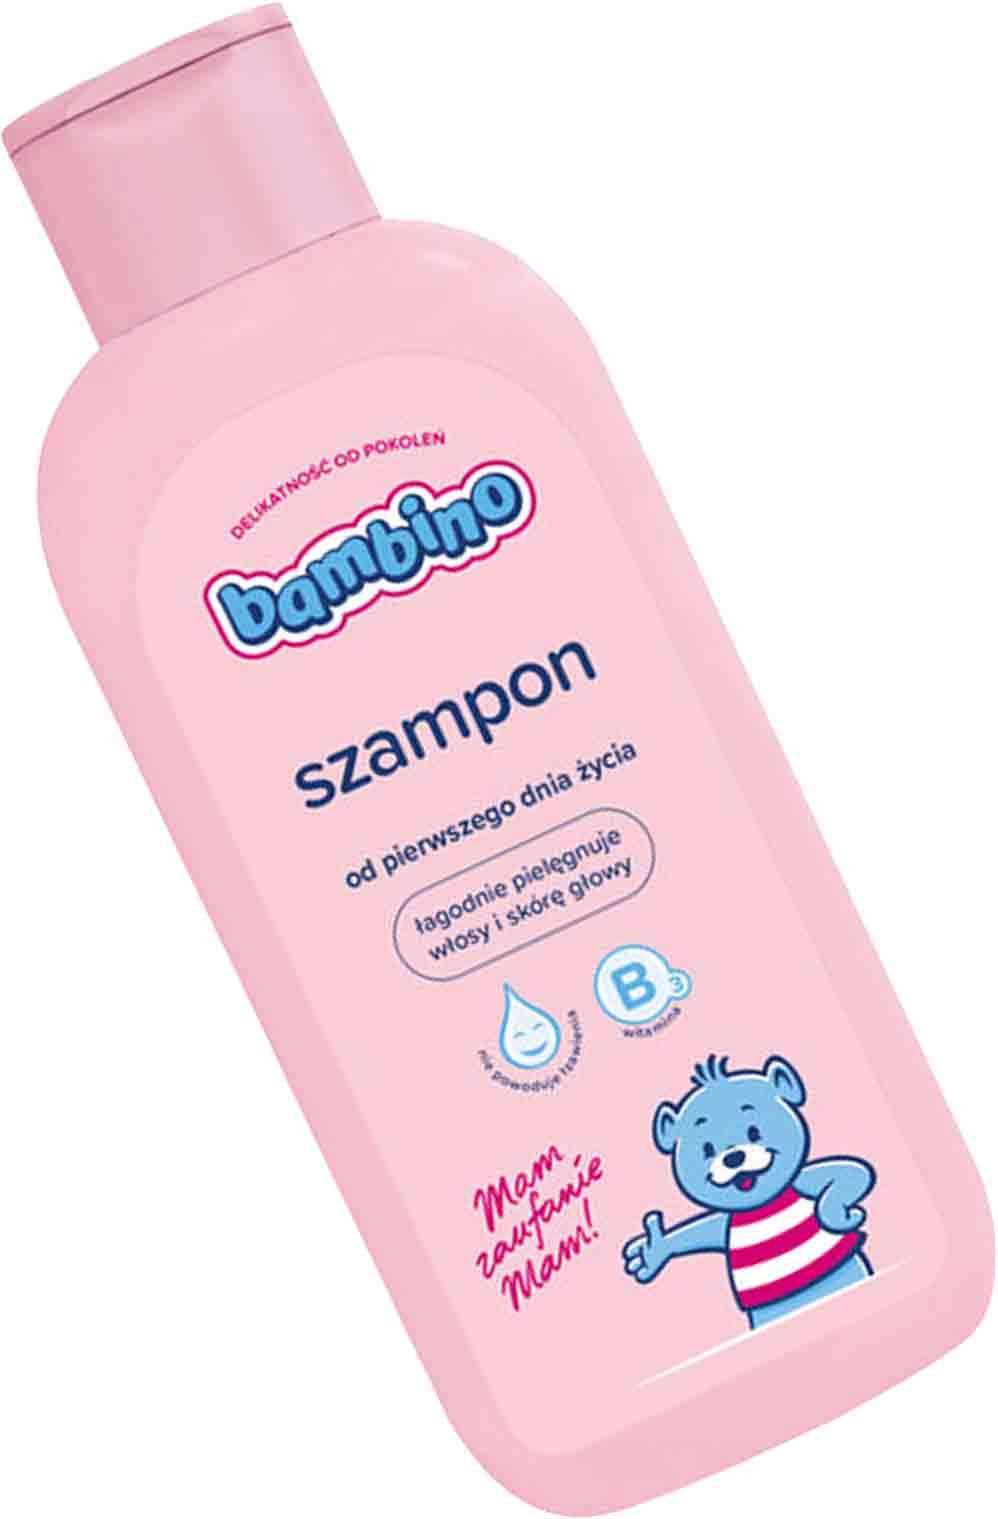 szampon dla niemowlaków allegro